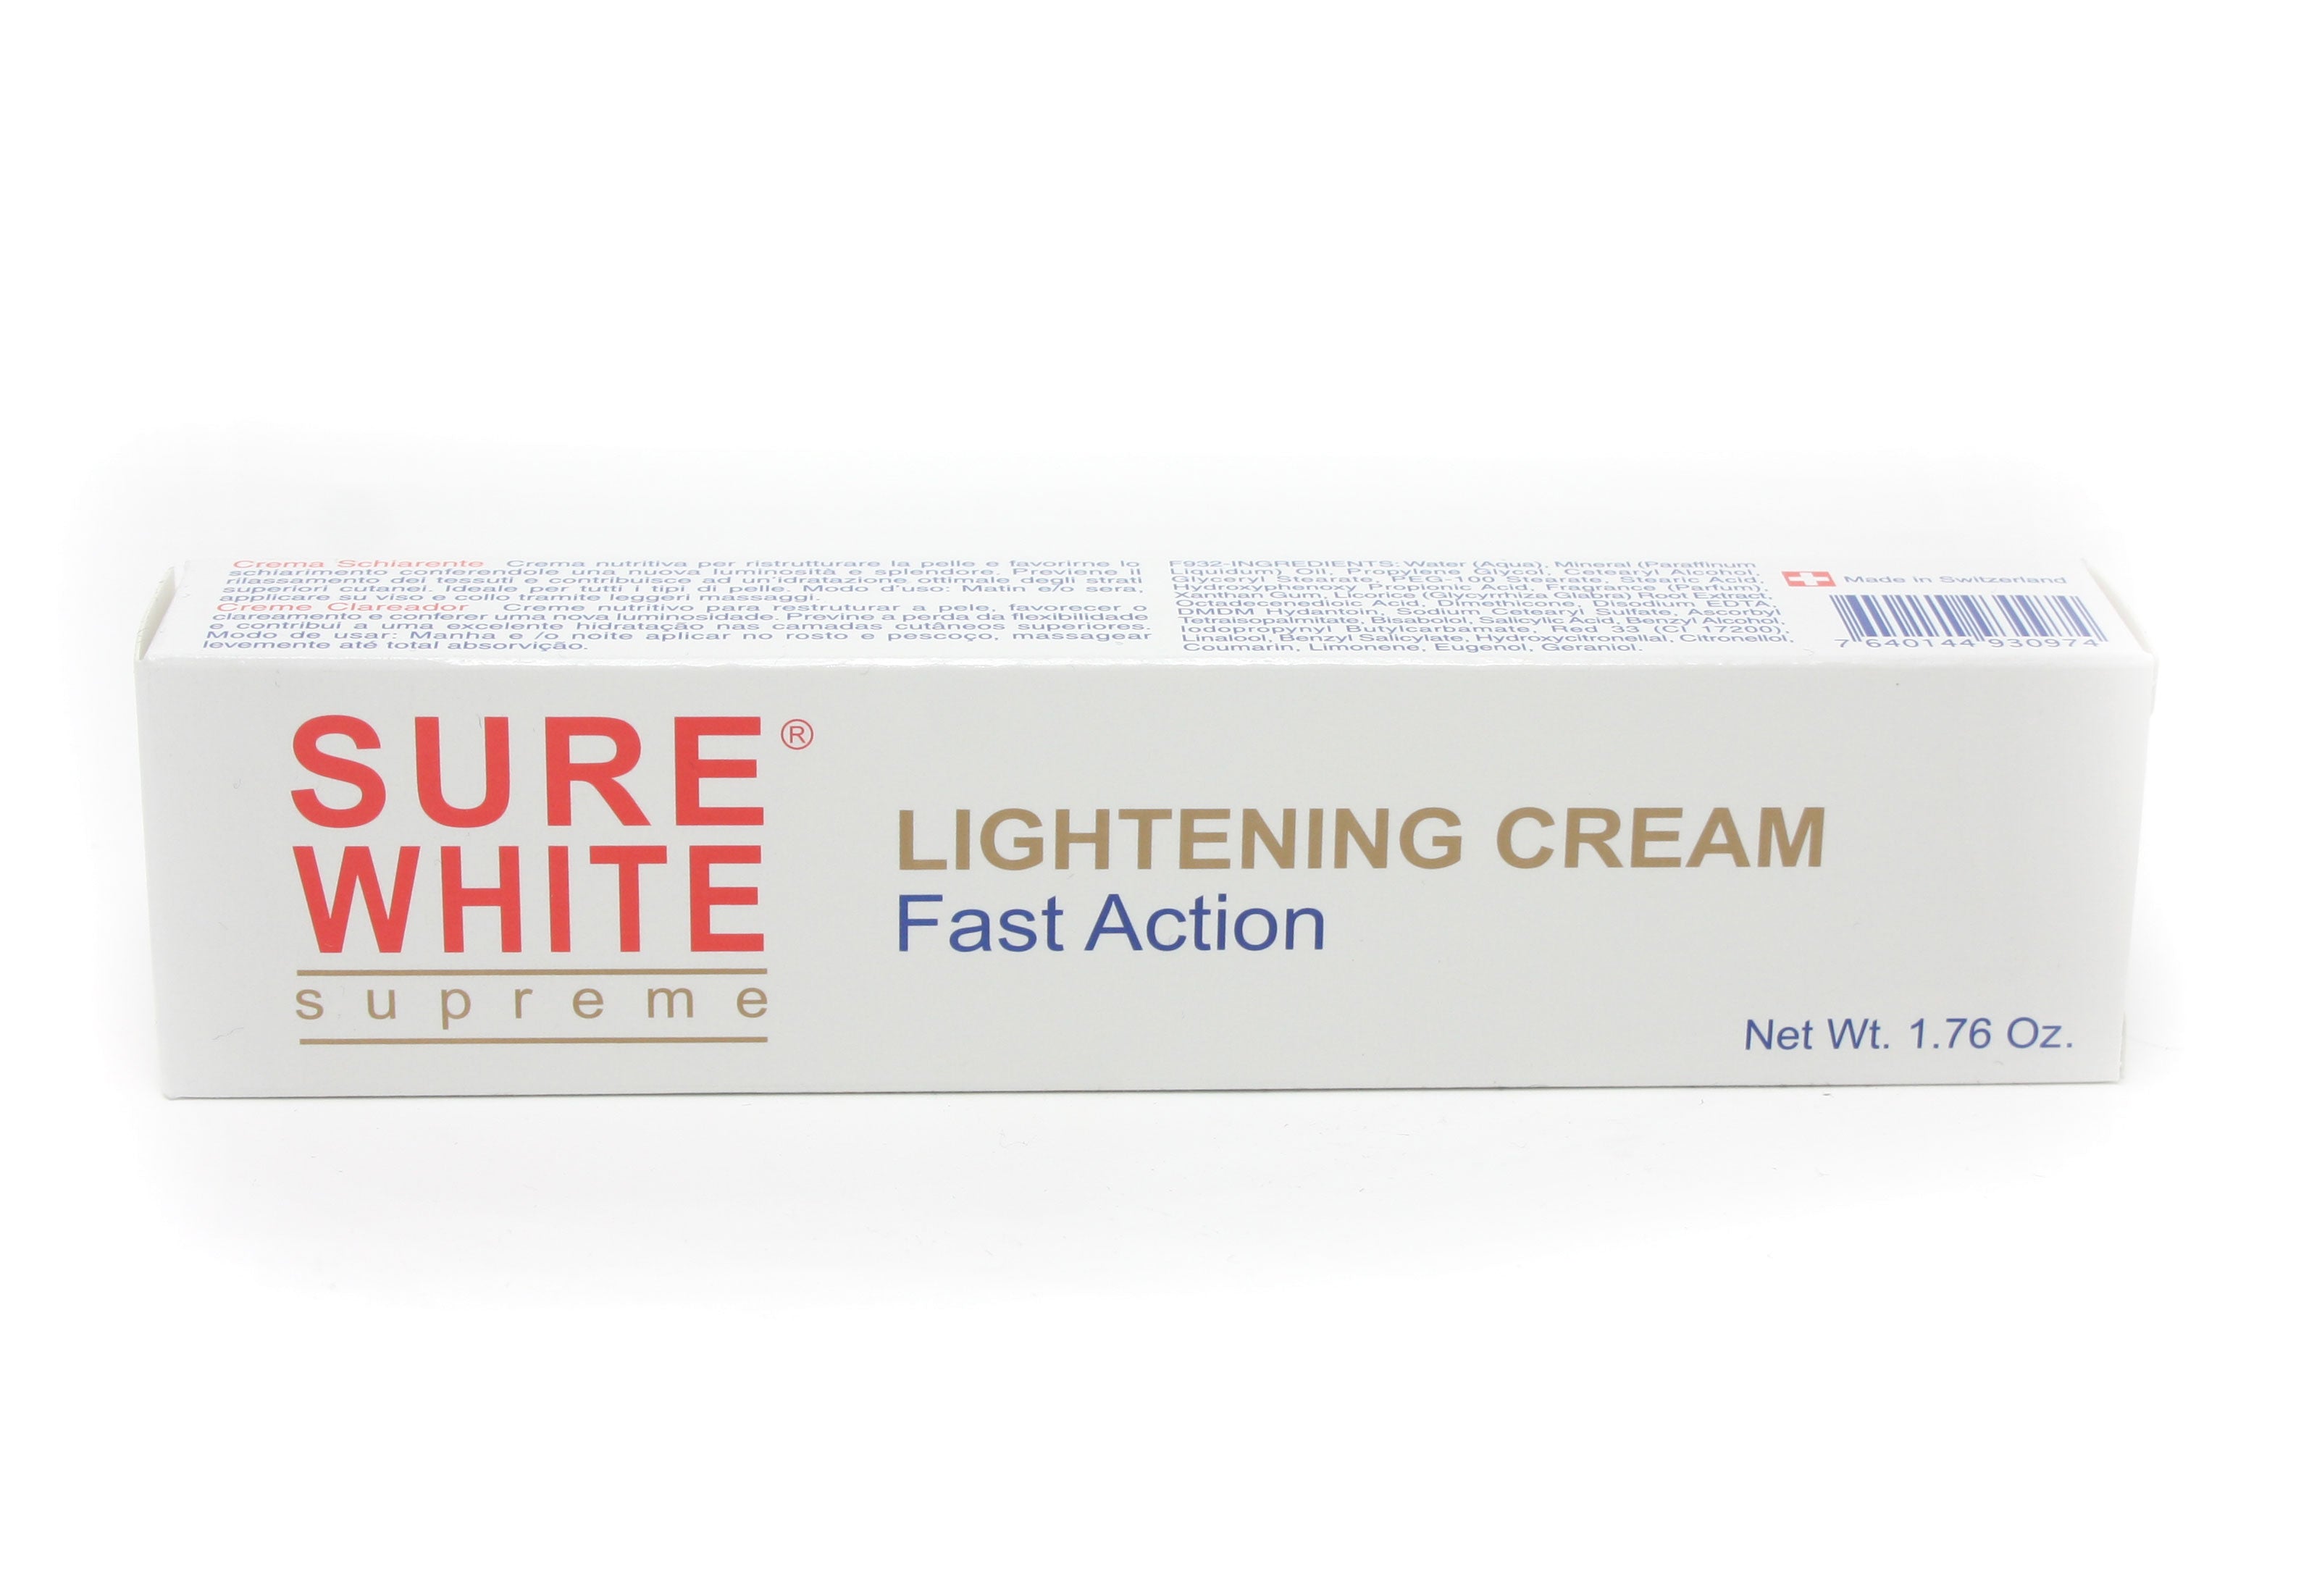 Cream White Skin. Supreme Creme от аллергии. White Conc крем цена. Супрем крем